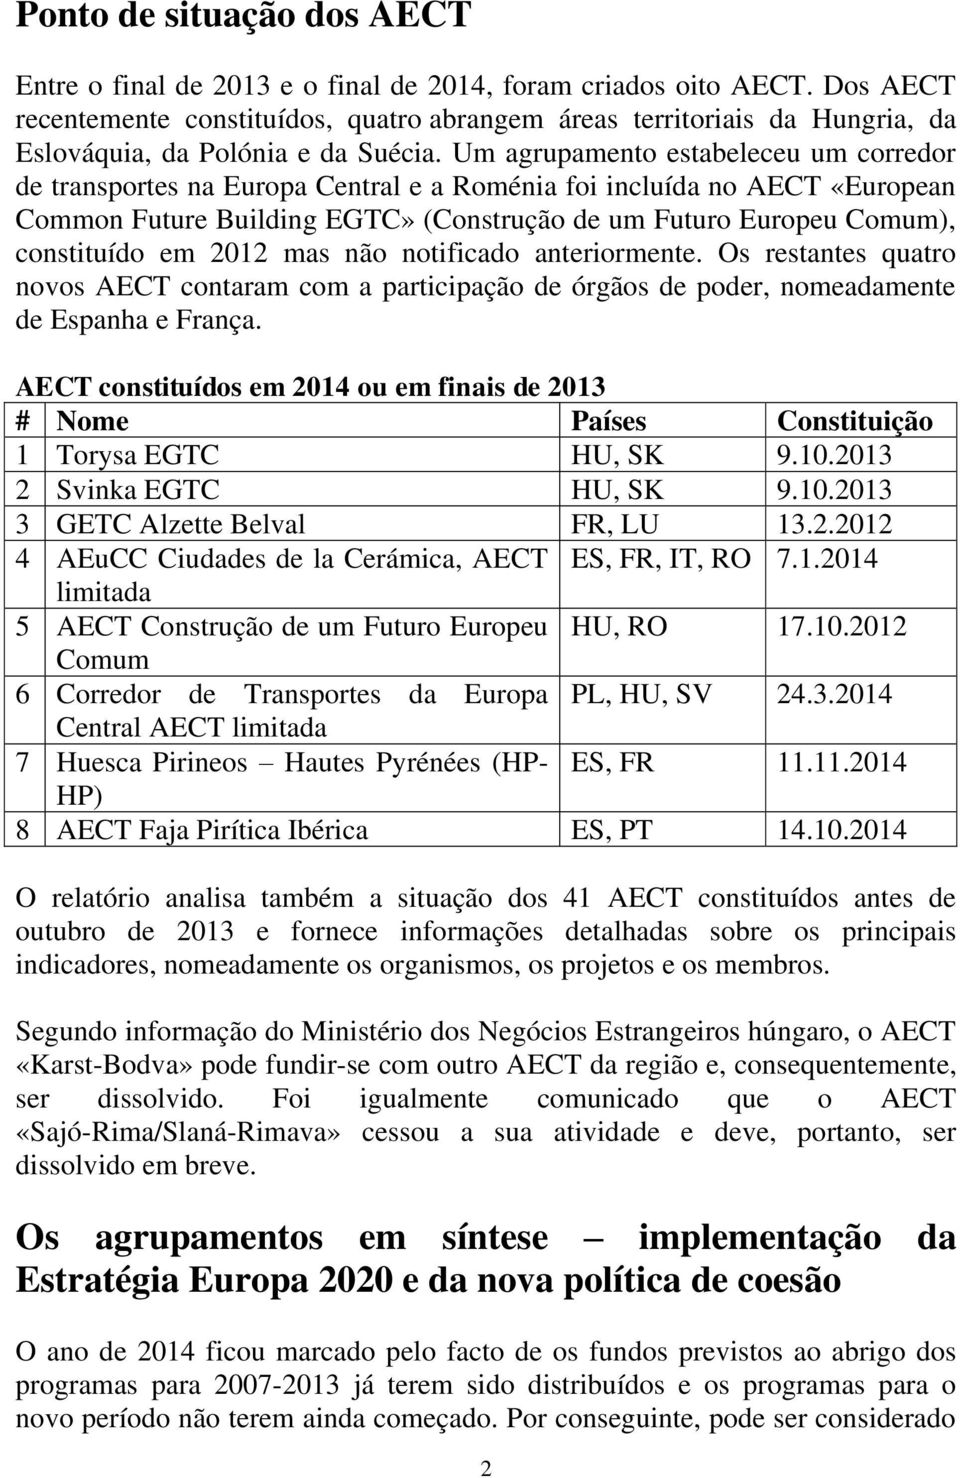 Um agrupamento estabeleceu um corredor de transportes na Europa Central e a Roménia foi incluída no AECT «European Common Future Building EGTC» (Construção de um Futuro Europeu Comum), constituído em